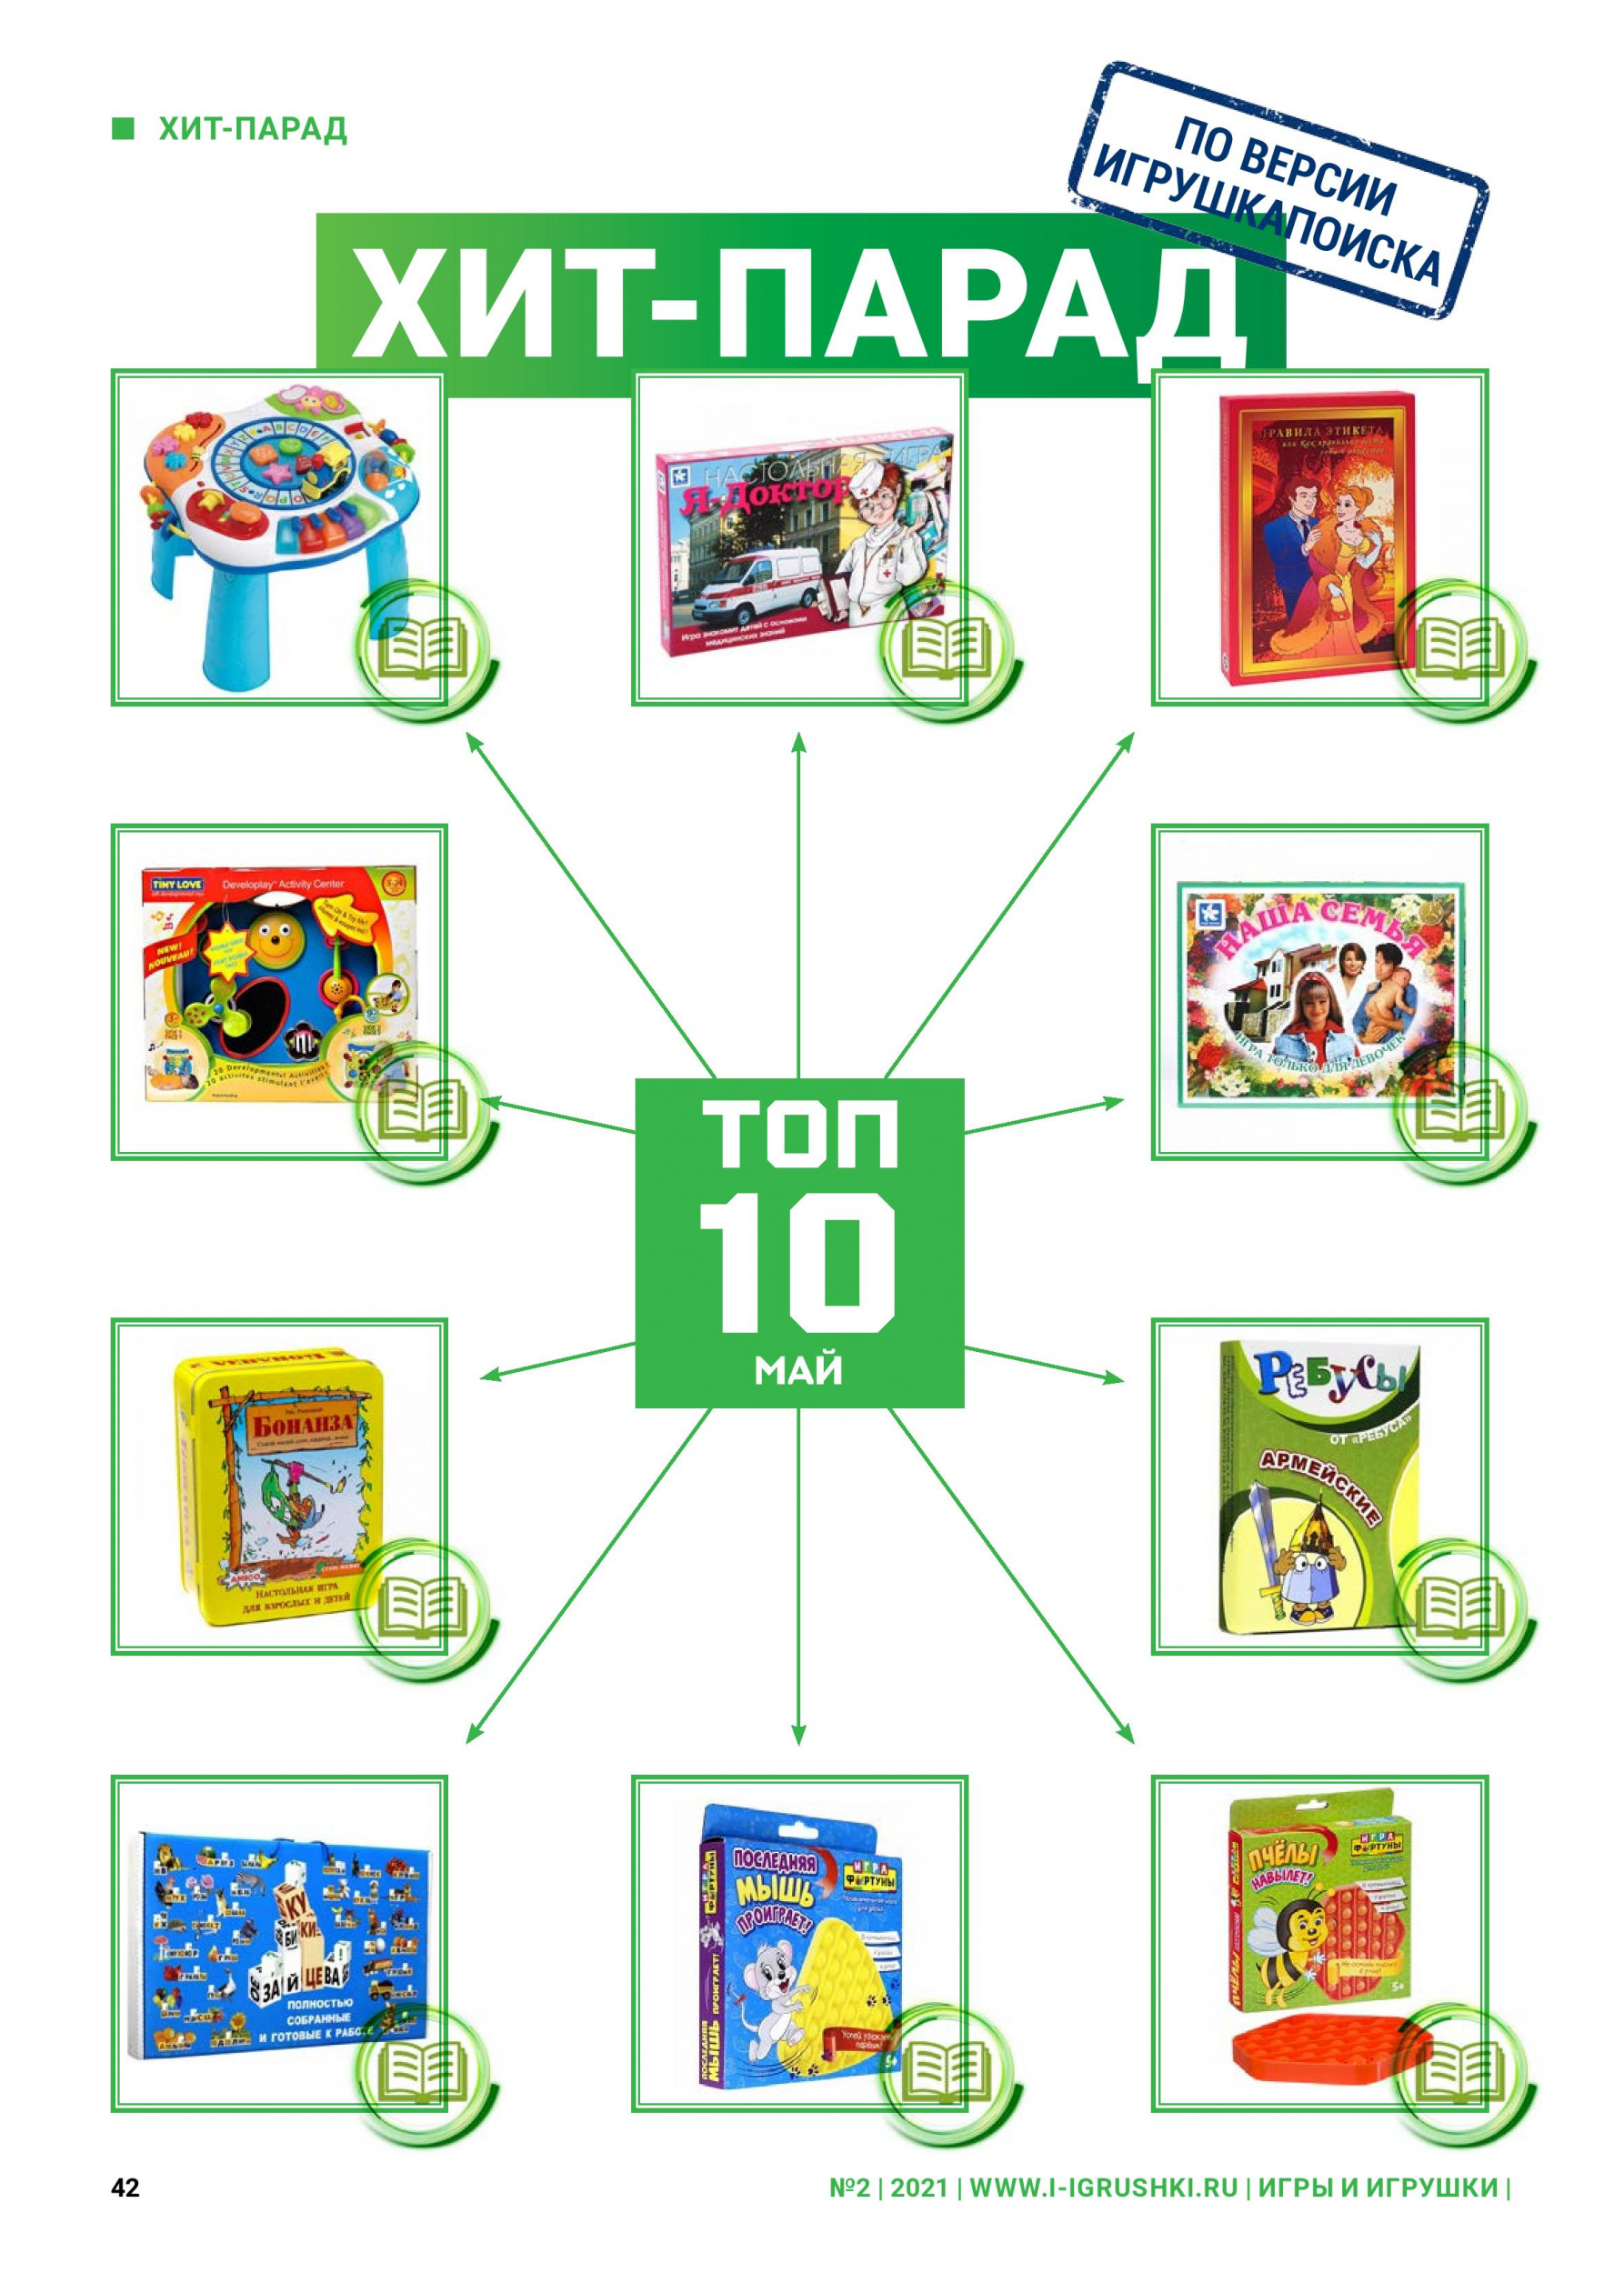 ТОП-10 лучших игрушек мая 2021